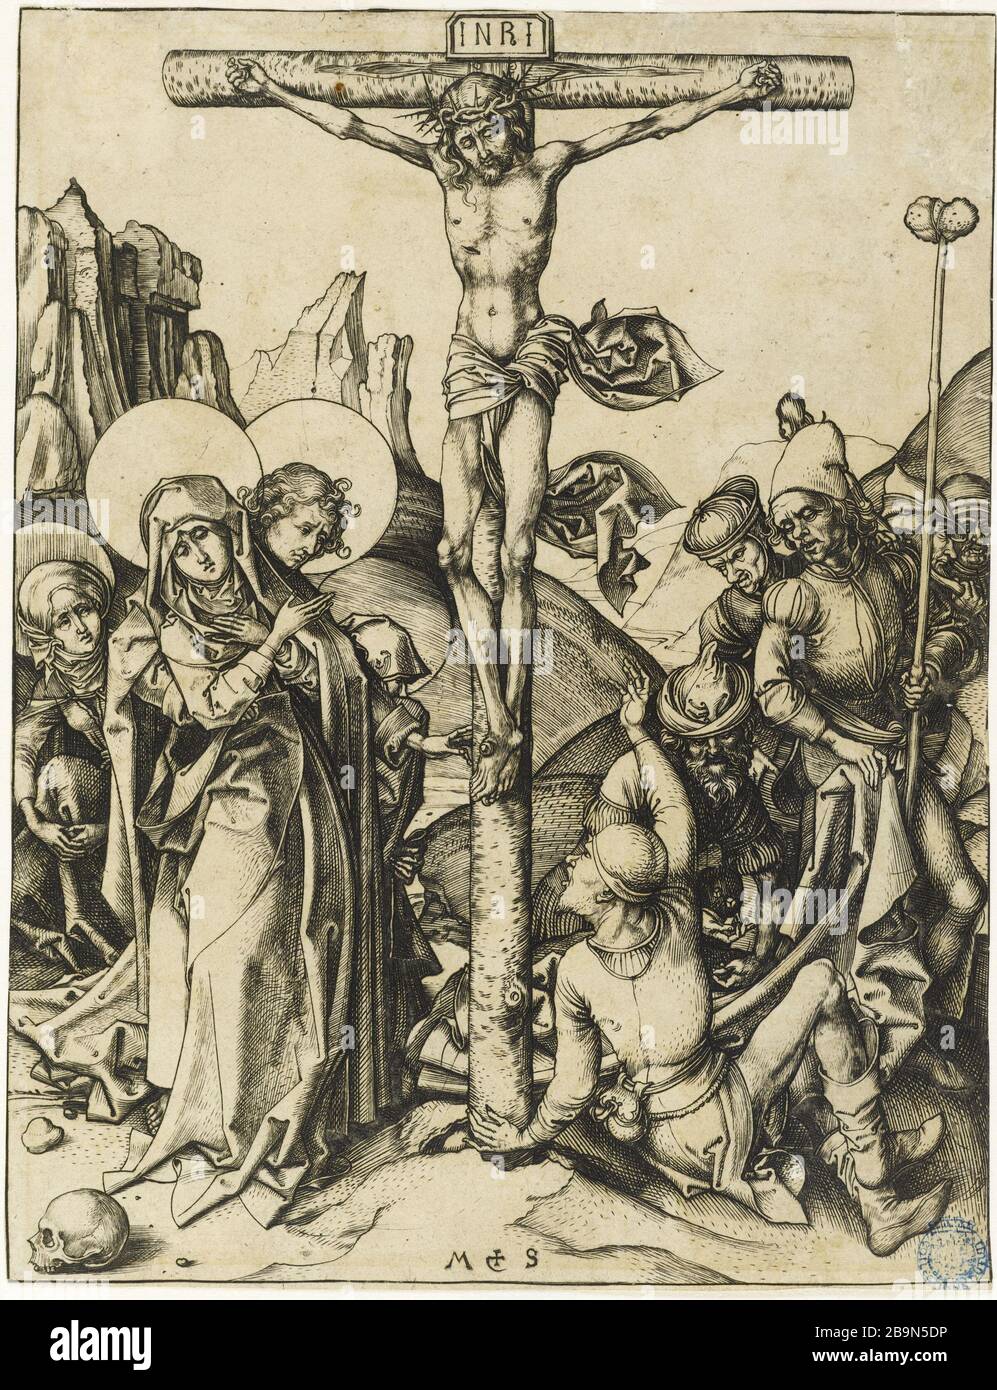 Crucifixion with jacks playing dice (Bartsch 24) Martin Schongauer (vers 1450-1495). La Crucifixion avec les valets jouant aux dés (Bartsch 24). Gravure (burin), 1475-1480. Musée des Beaux-Arts de la Ville de Paris, Petit Palais. Stock Photo